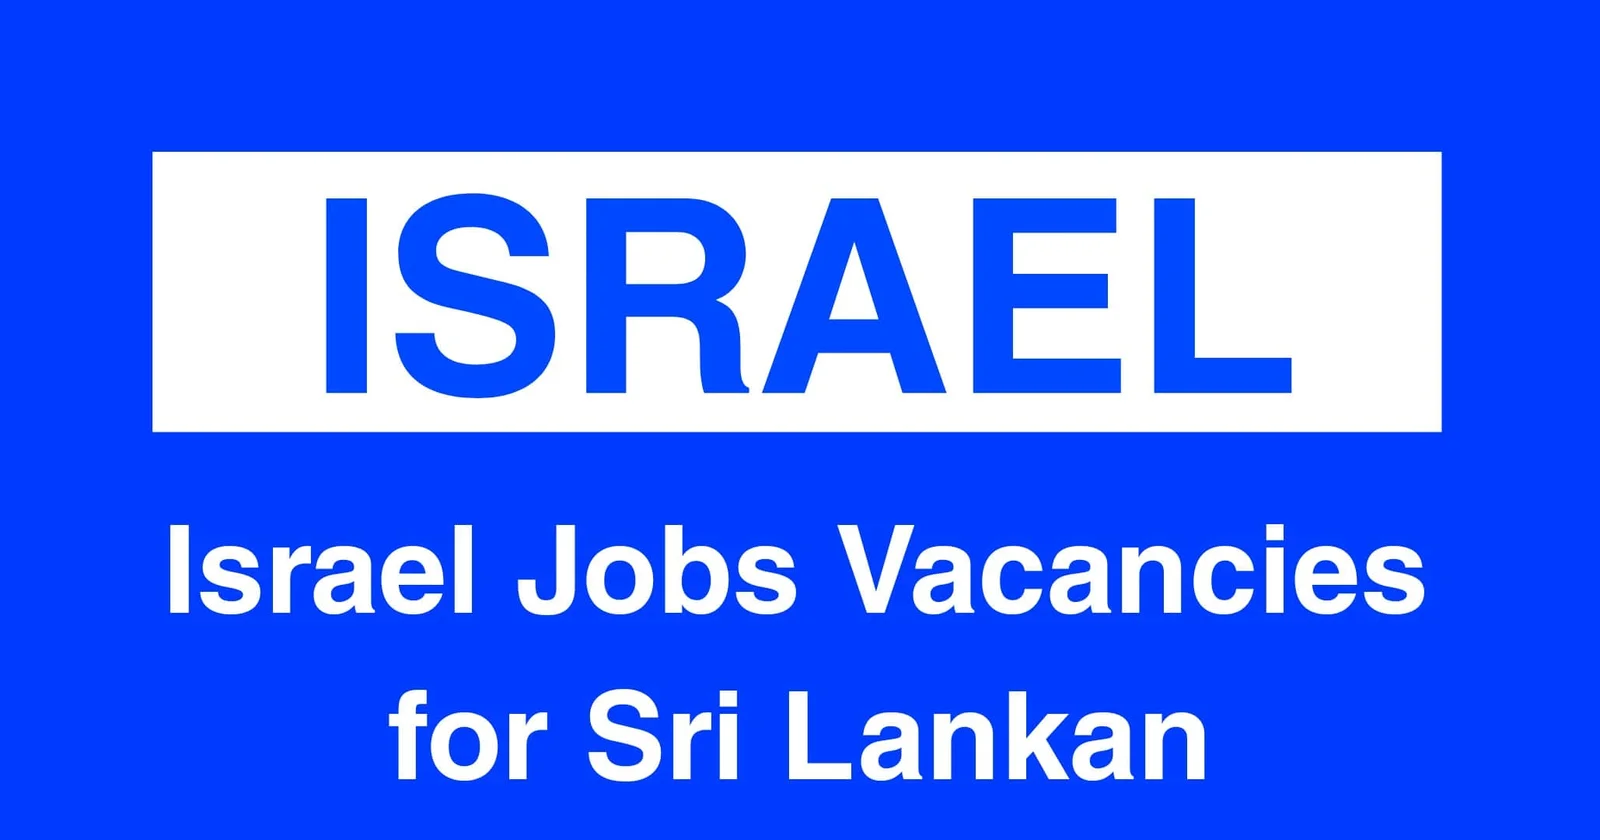 Israel Jobs Vacancies for Sri Lankan